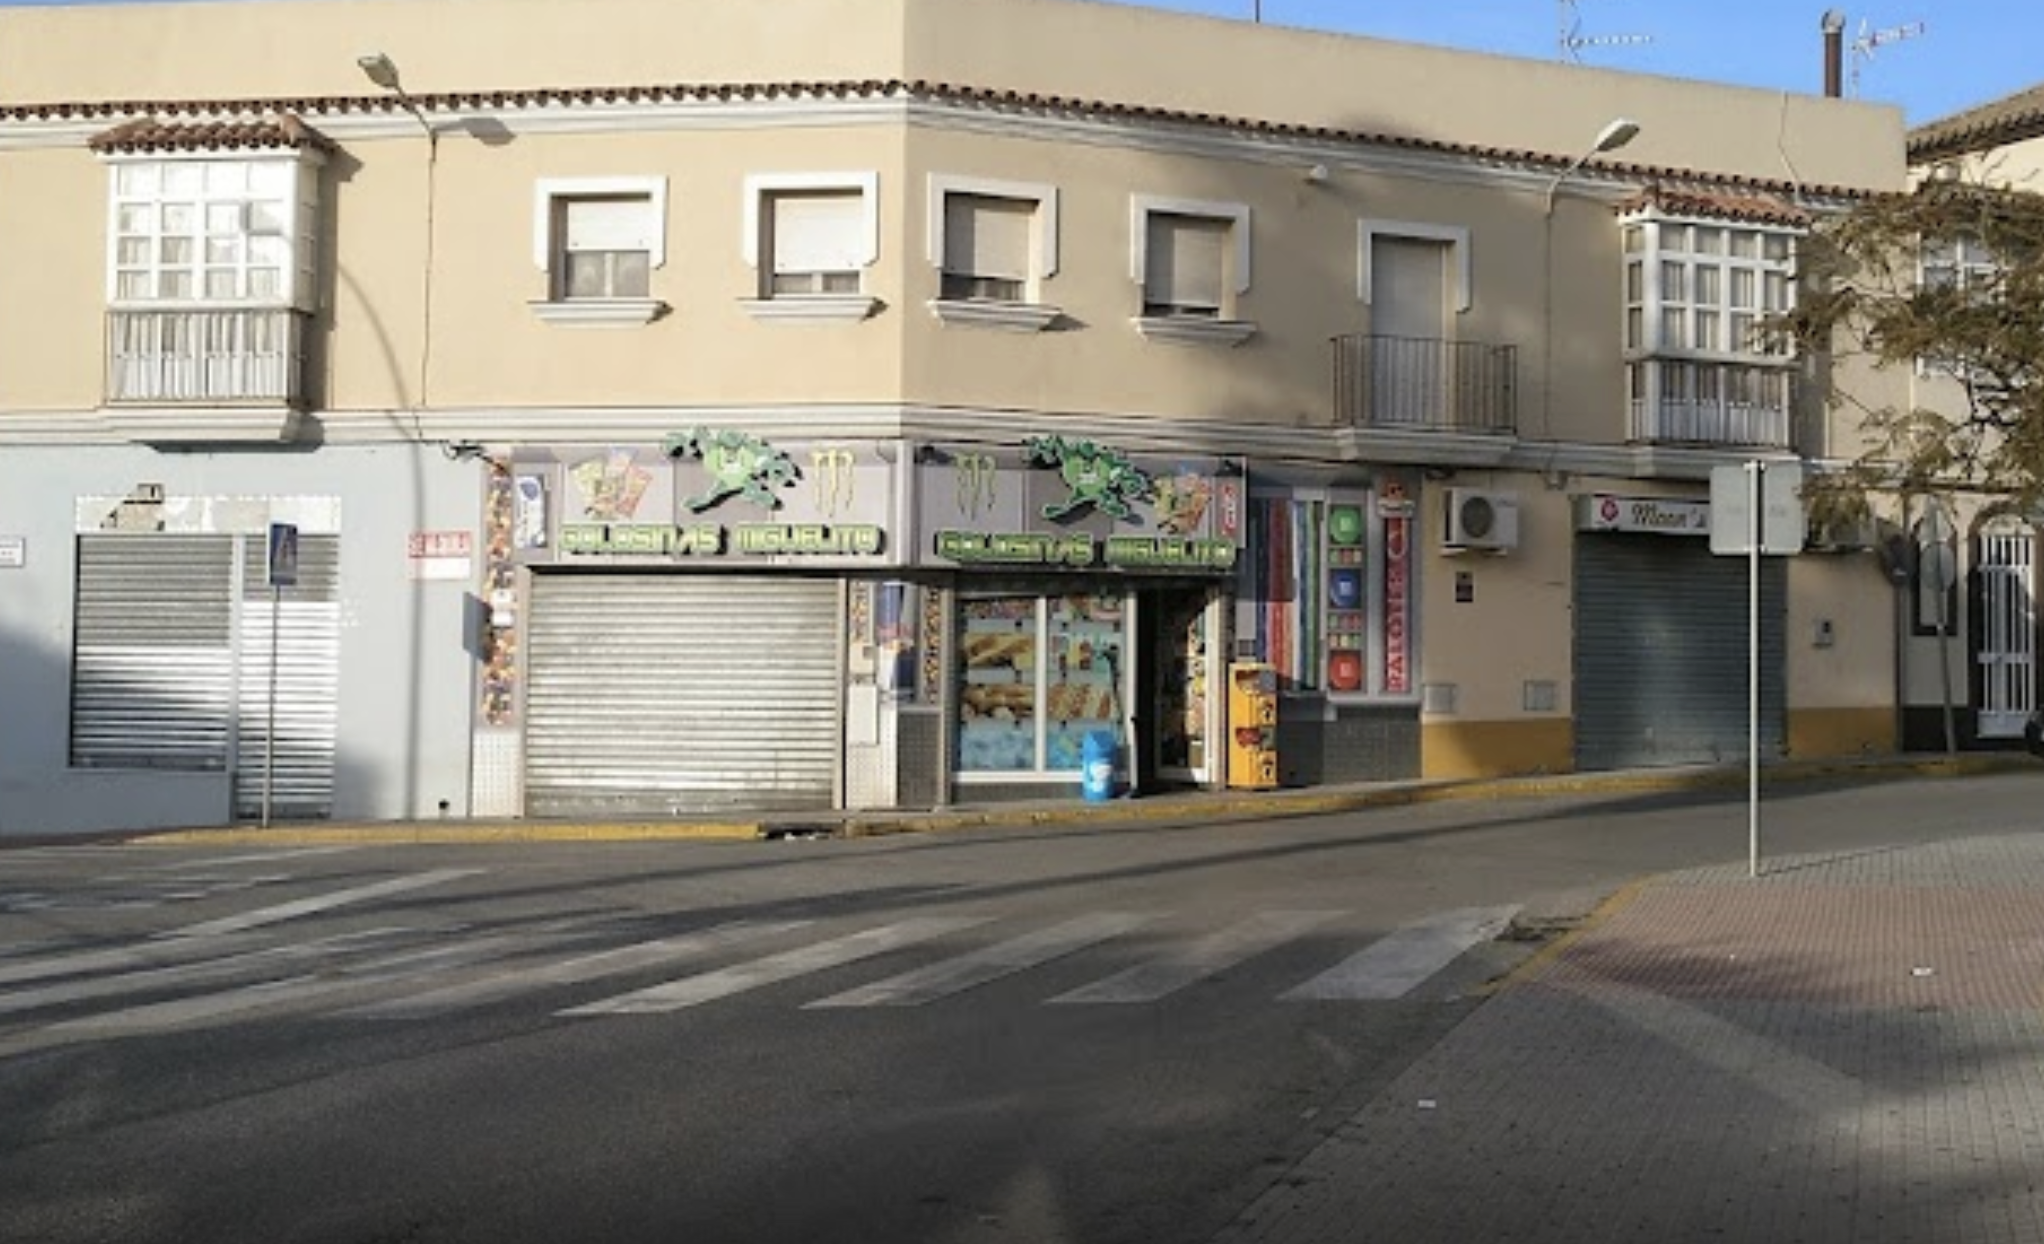 Tienda de golosinas en Chiclana, en una imagen de Google Maps.